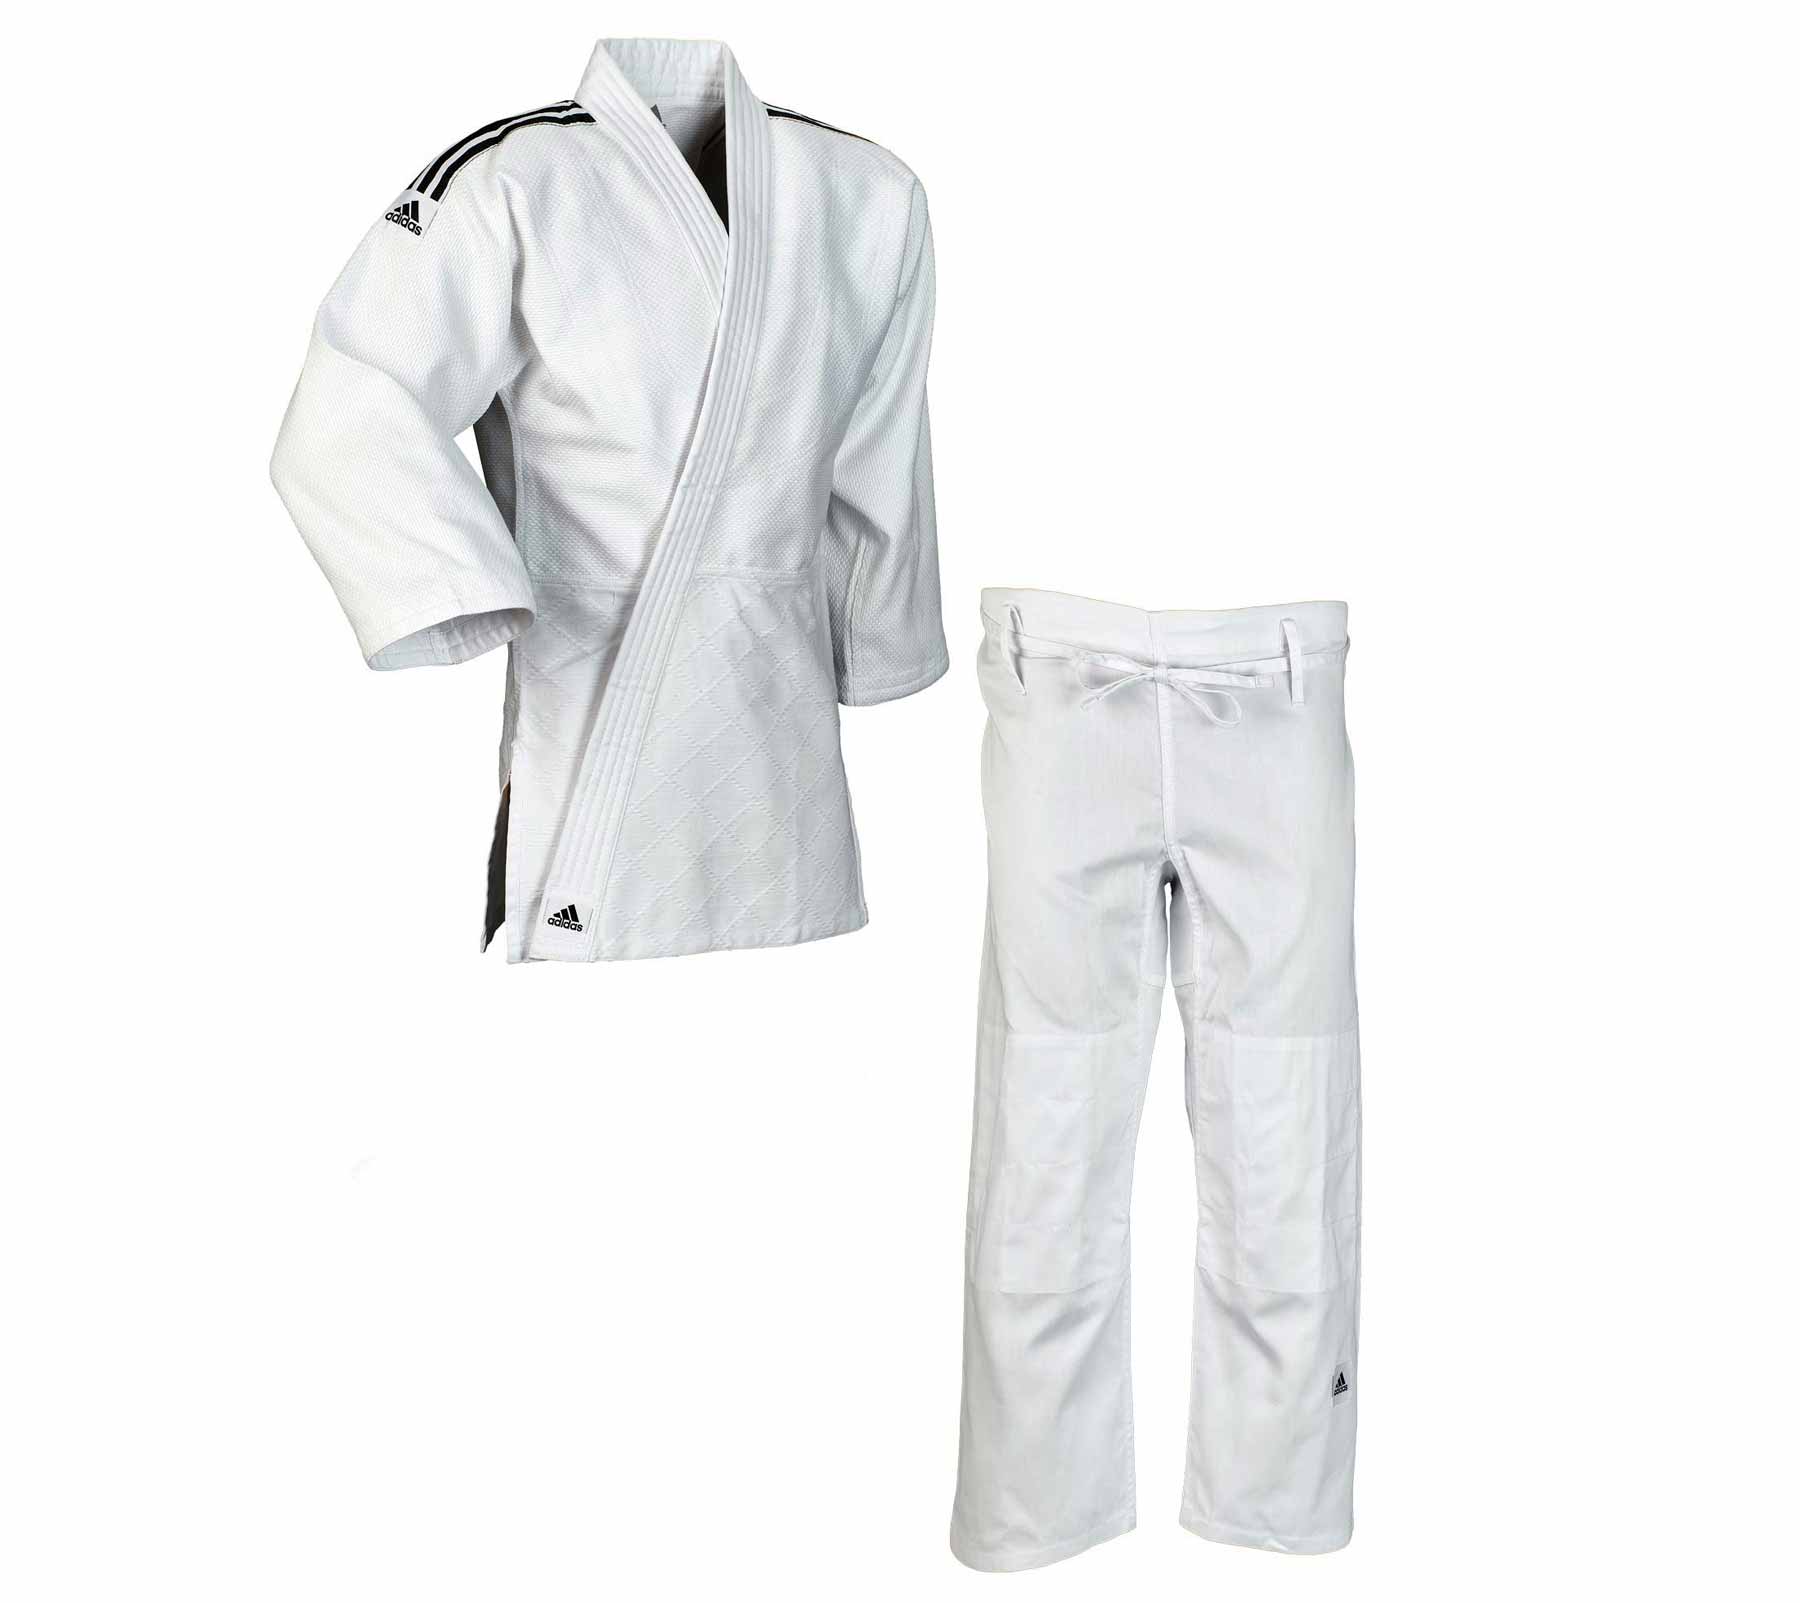 Кимоно для дзюдо подростковое Training белое (размер 140 см)